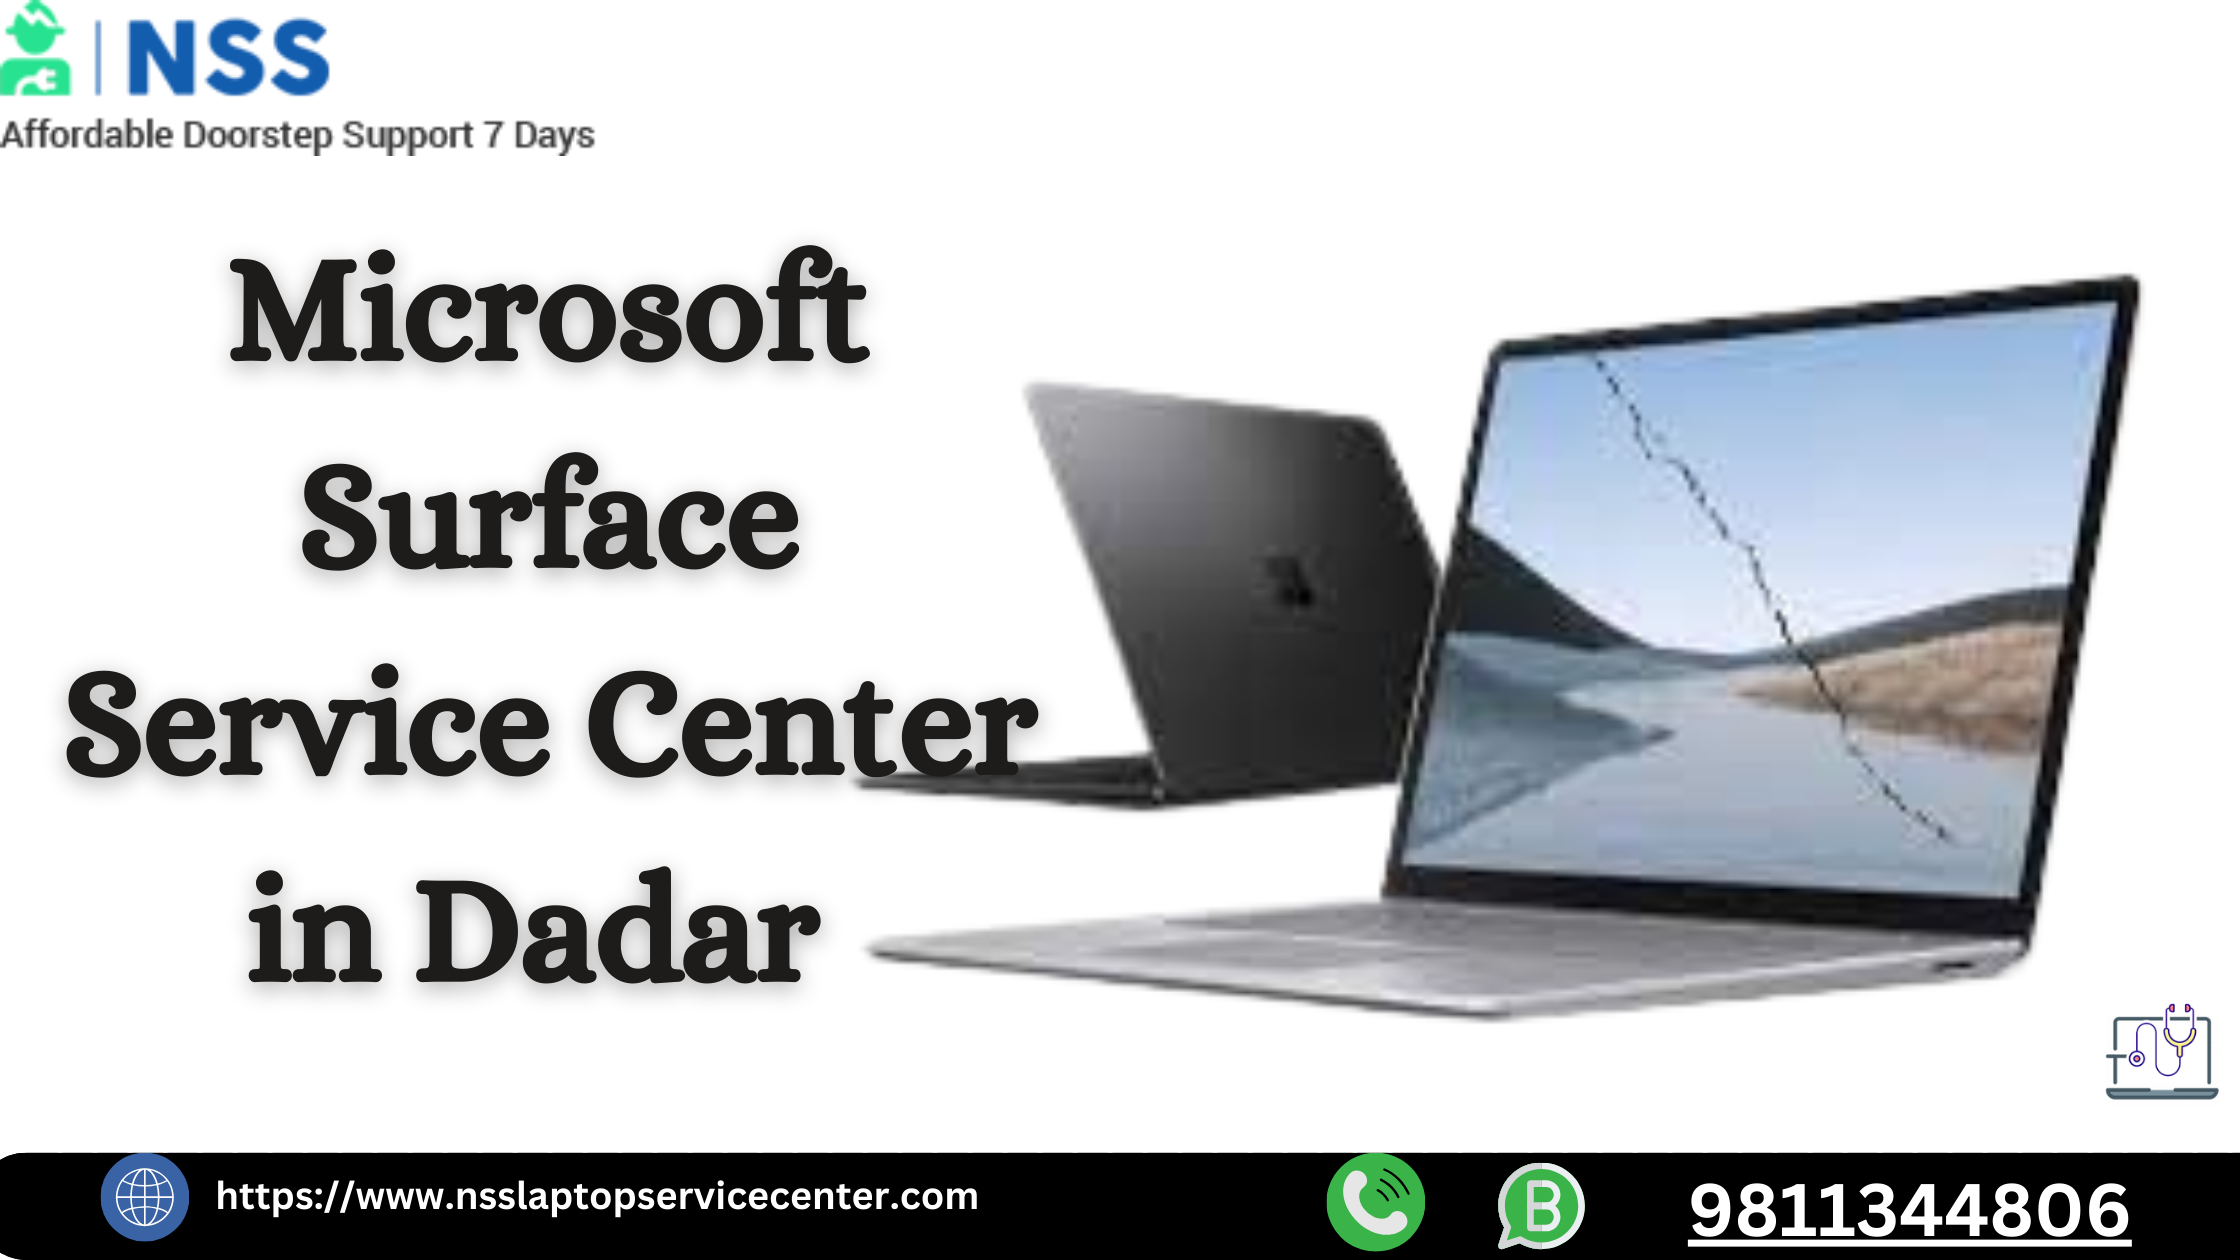 Microsoft Surface Service Center in Dadar Near Mumbai